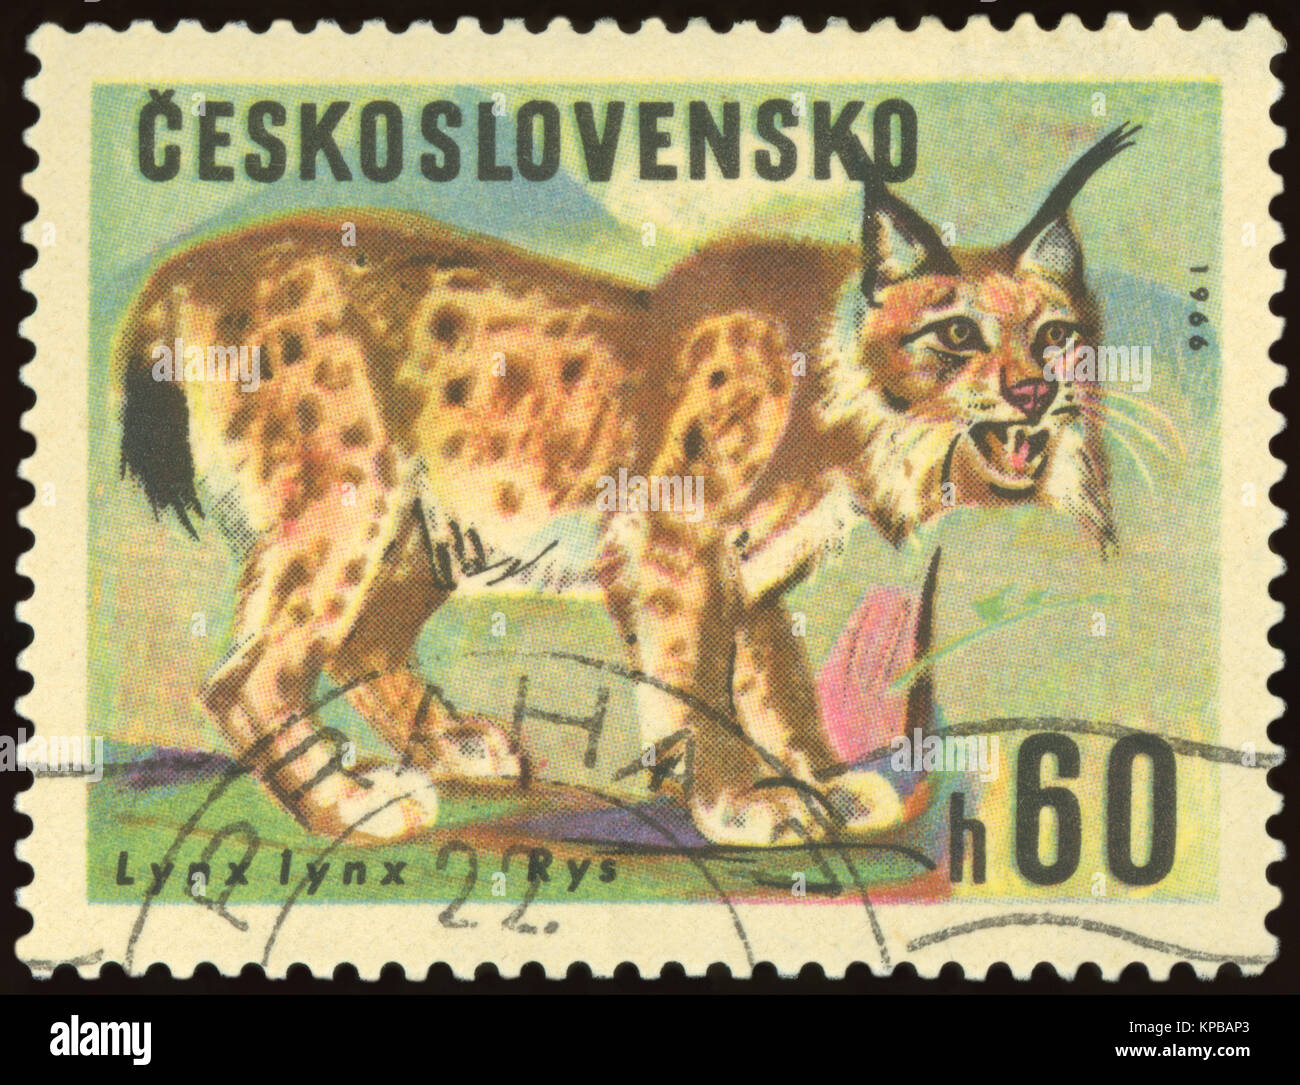 Tschechoslowakei - ca. 1966: mit einem Stempel, in der Tschechoslowakei gedruckt, zeigt eine Rys Tier, ca. 1966. Stockfoto